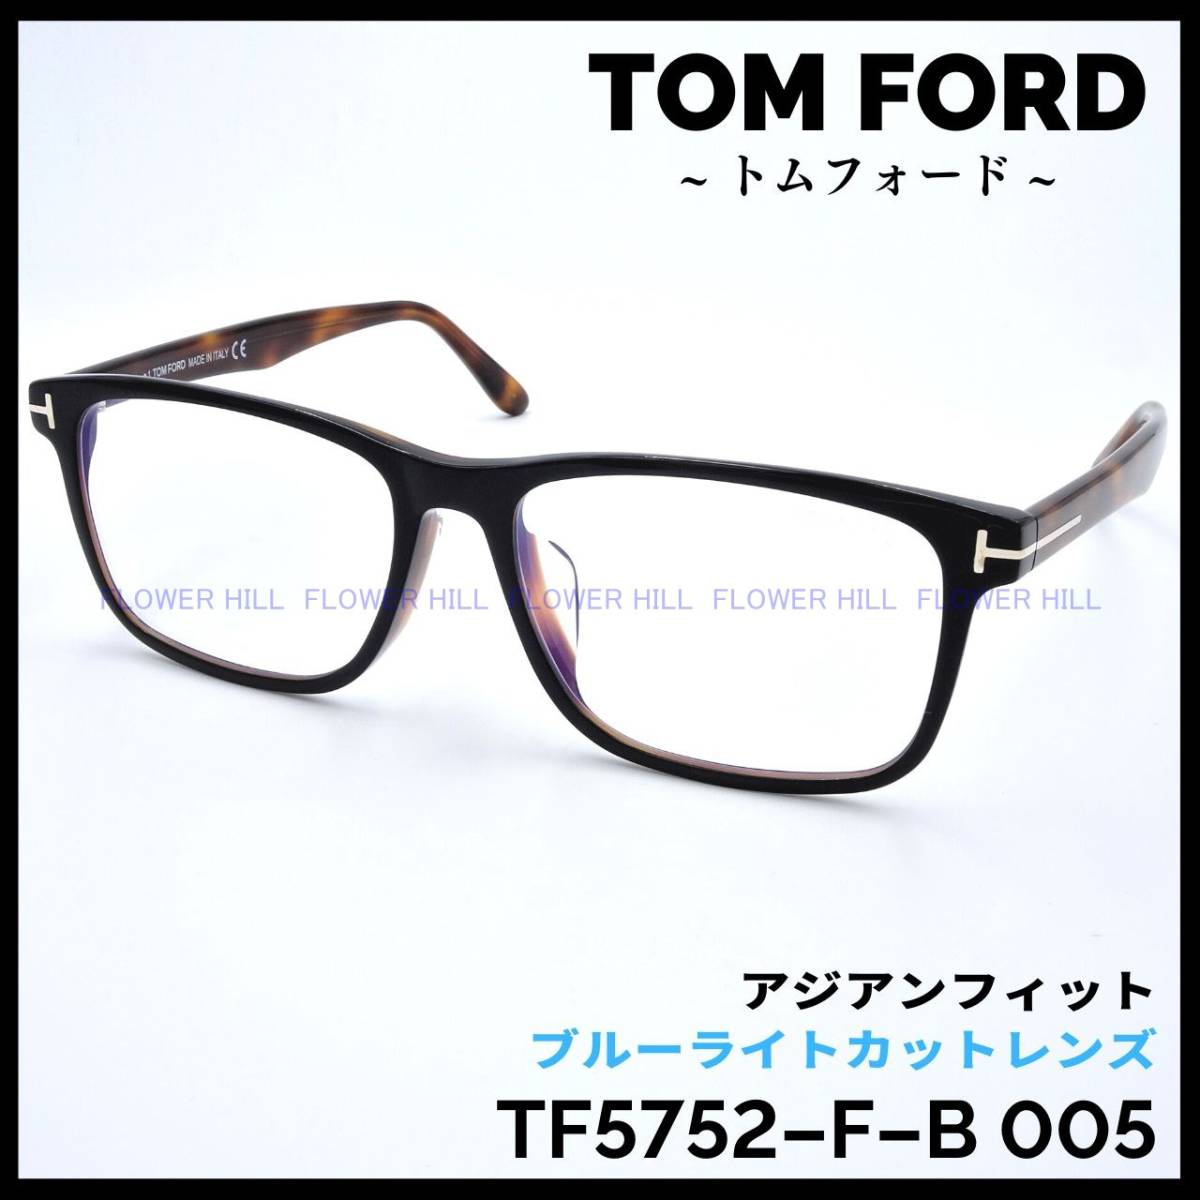 専門ショップ メガネ FORD TOM 【新品・送料無料】トムフォード TF5752